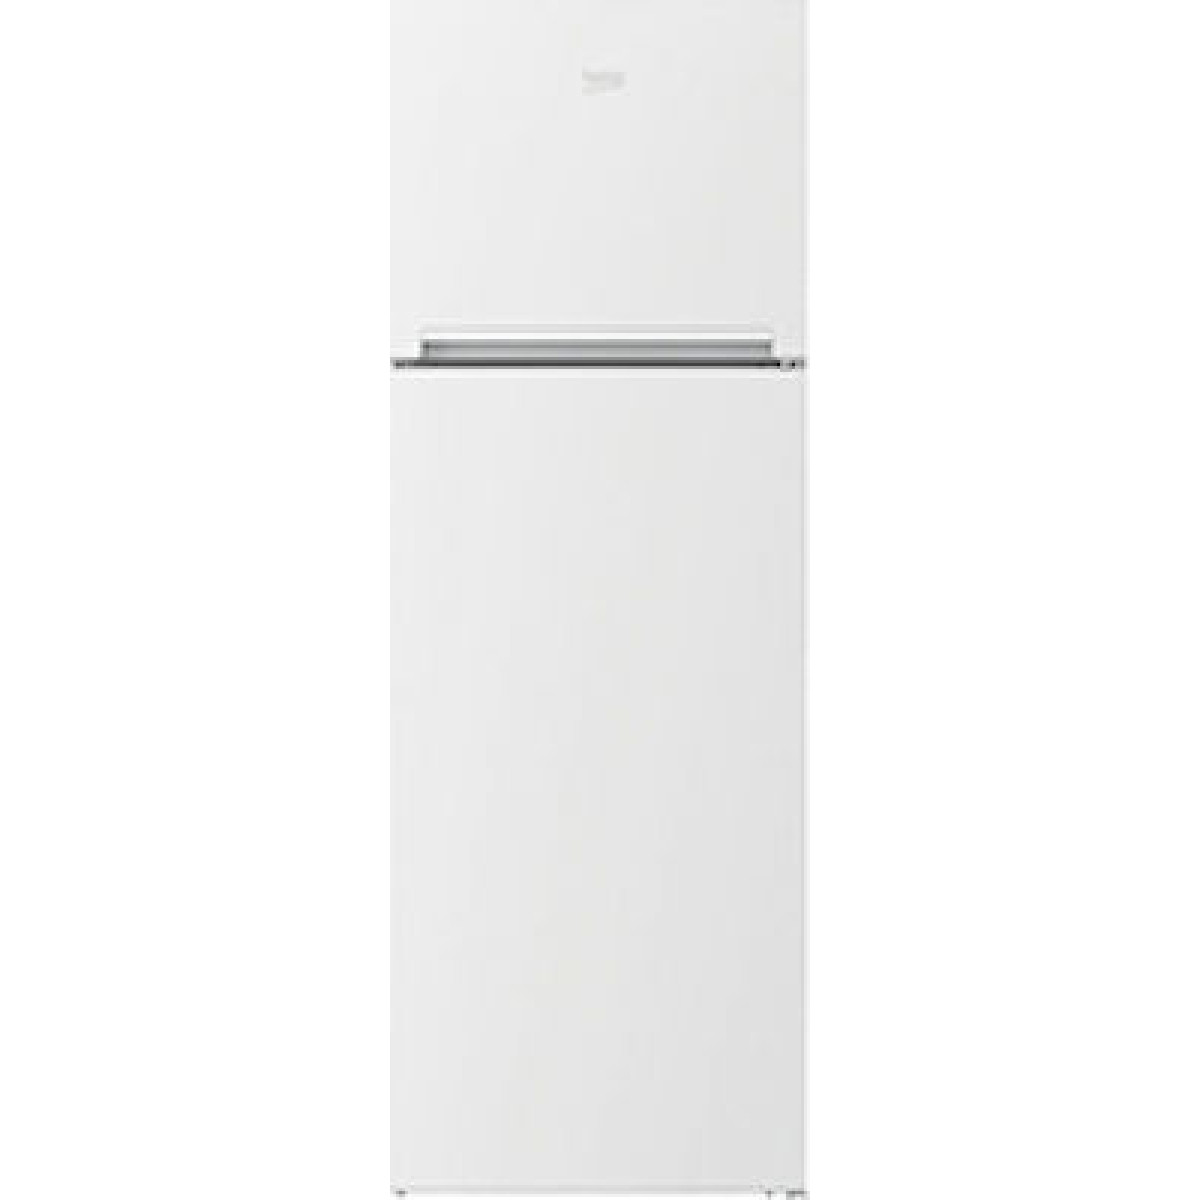 Ψυγείο Δίπορτο Beko RDSE450K30WN Λευκό Ψυγεία δίπορτα